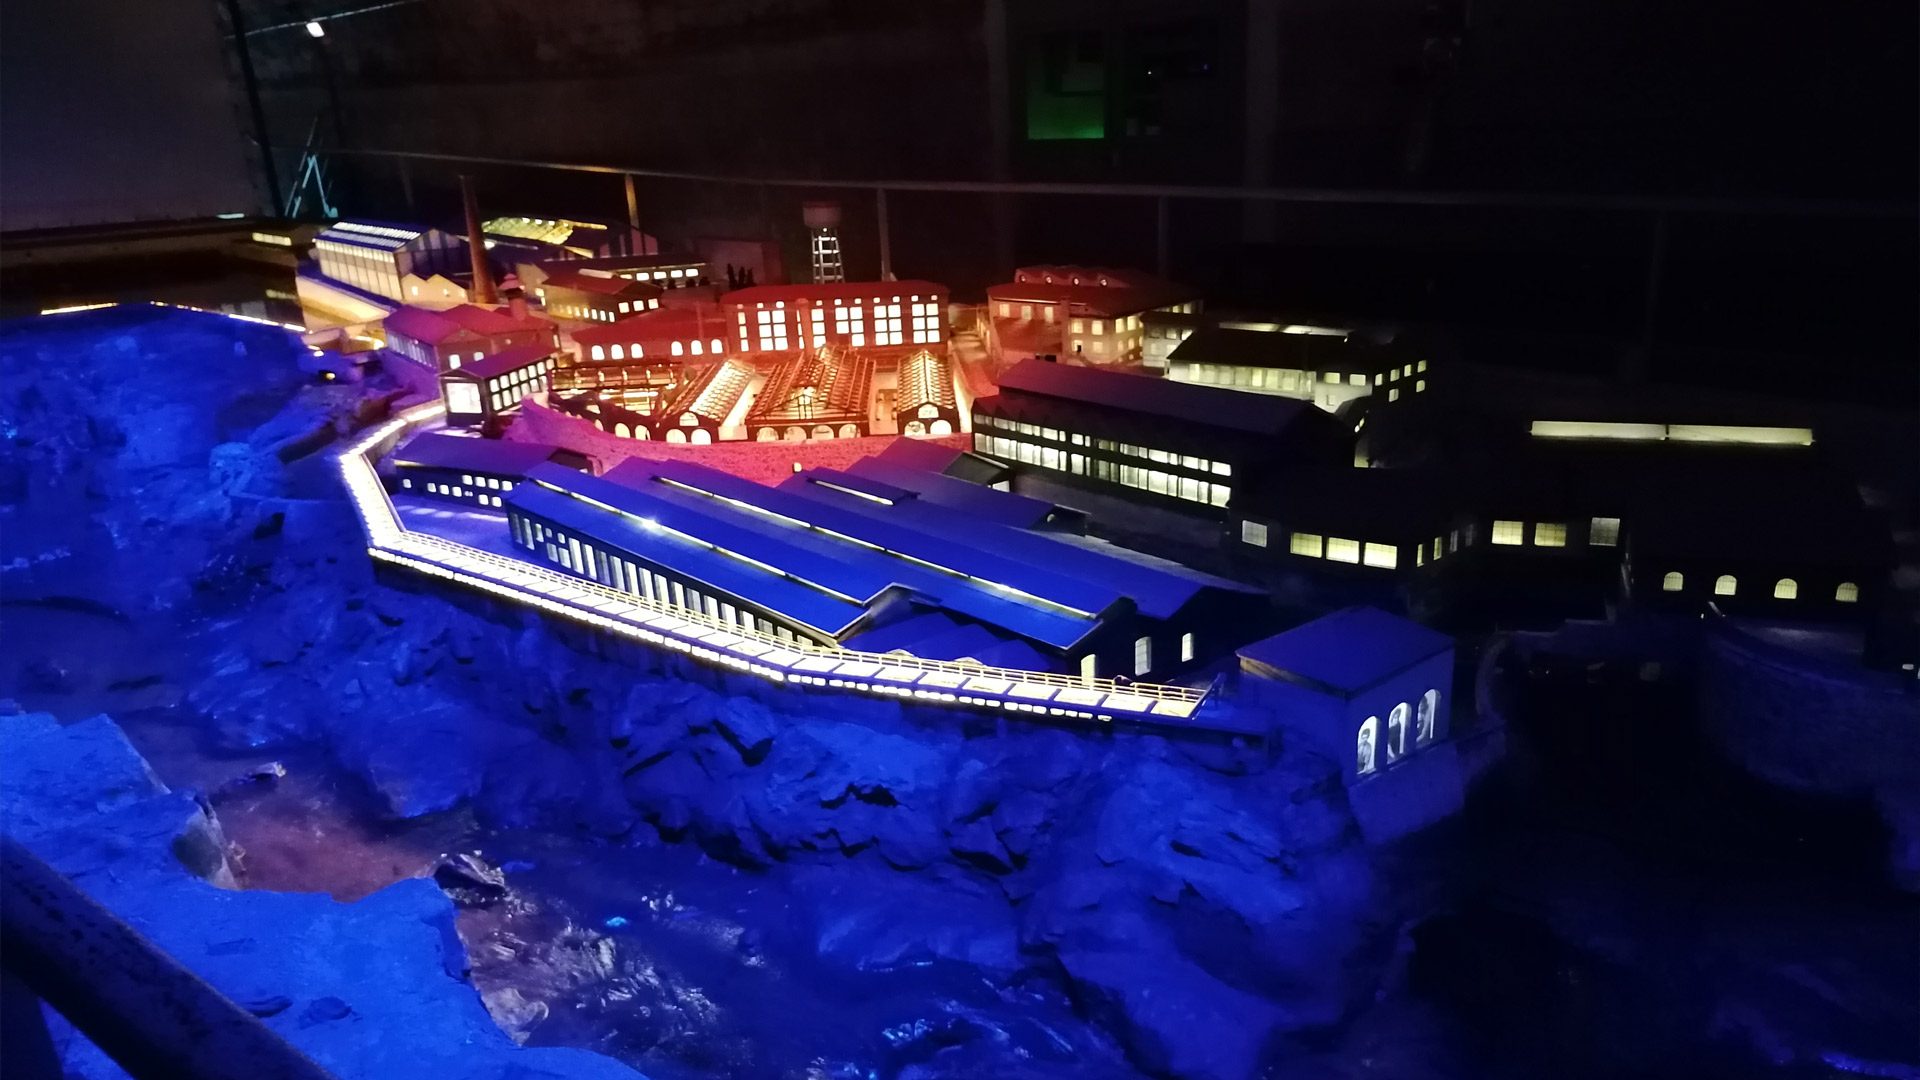 ソー・デュ・タルン博物館 - Saint Juéry - 発電所のモデル、訪問中に提供される音と光のショー